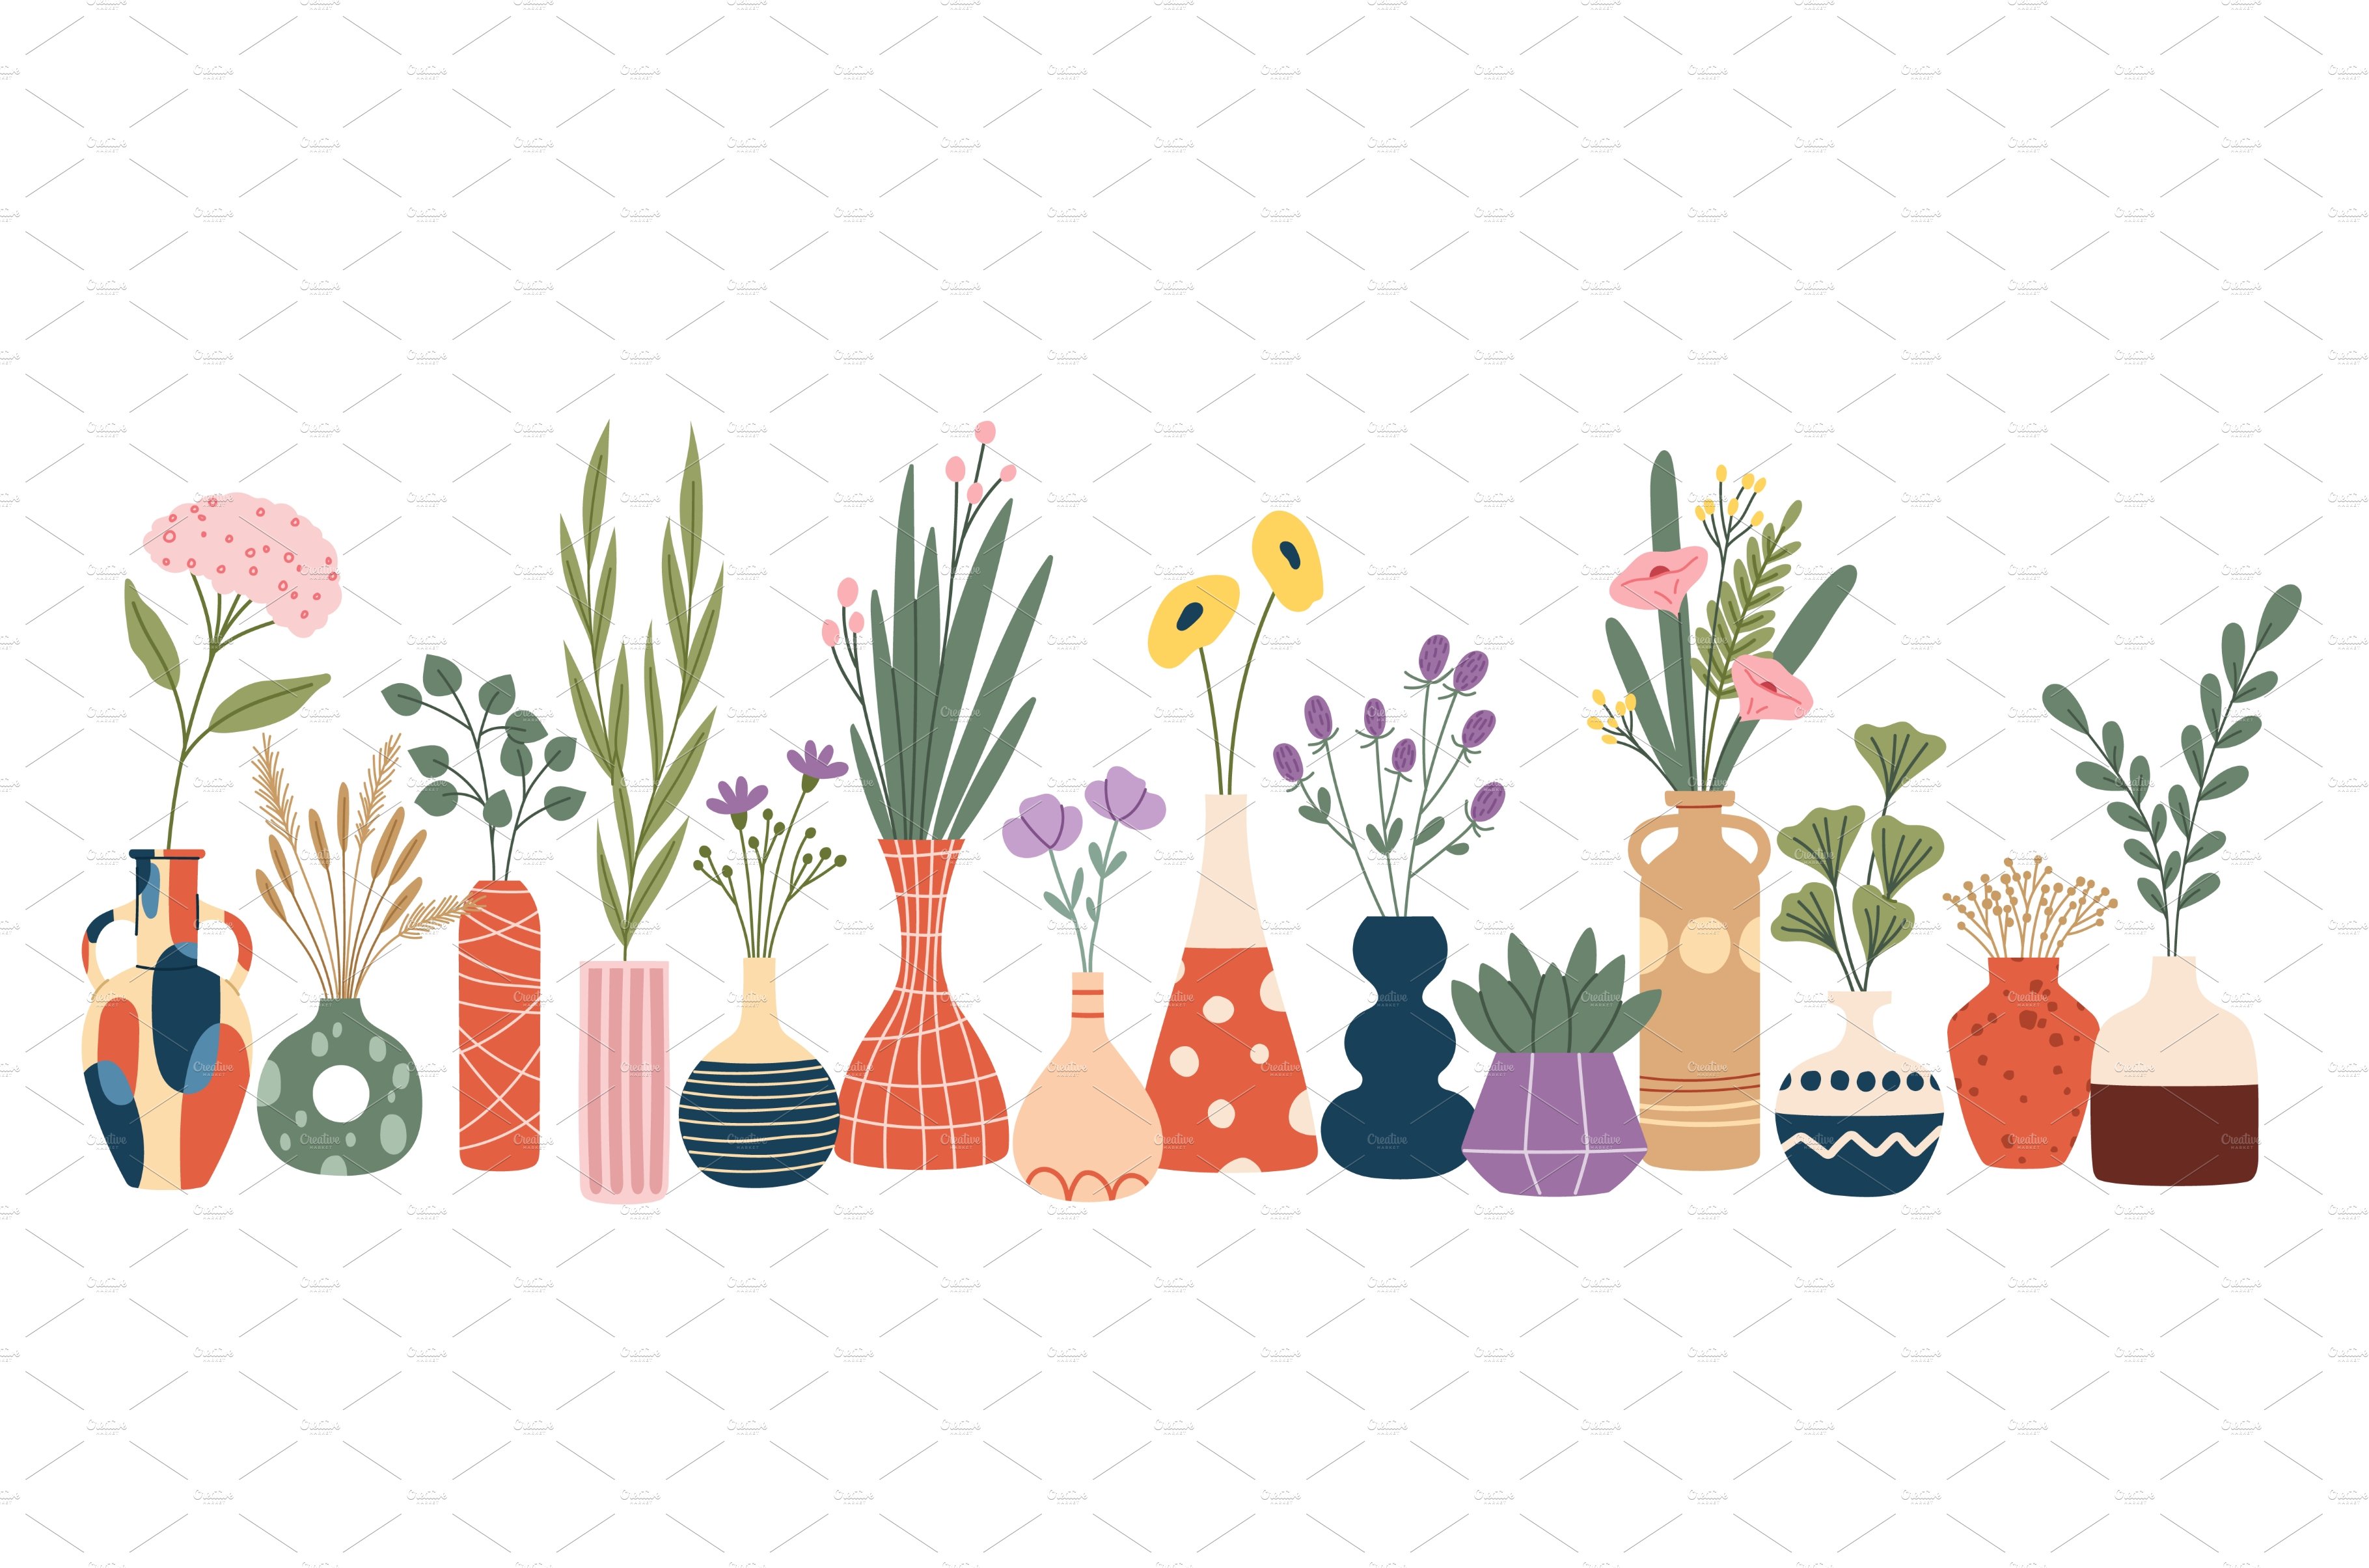 Scandinavian flower vases cover image.